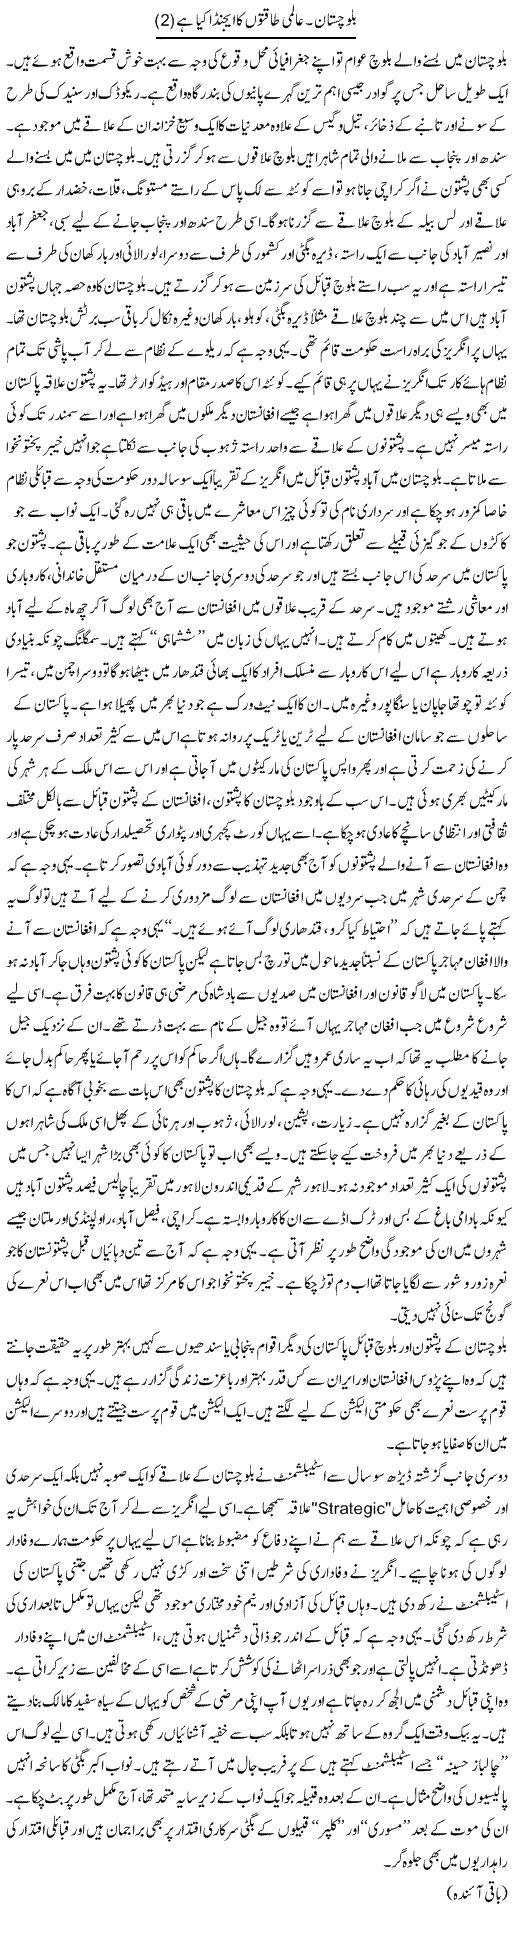 Baluchistan. aalmi taqaton ka agenda kya hai (2) | Orya Maqbool Jan | Daily Urdu Columns